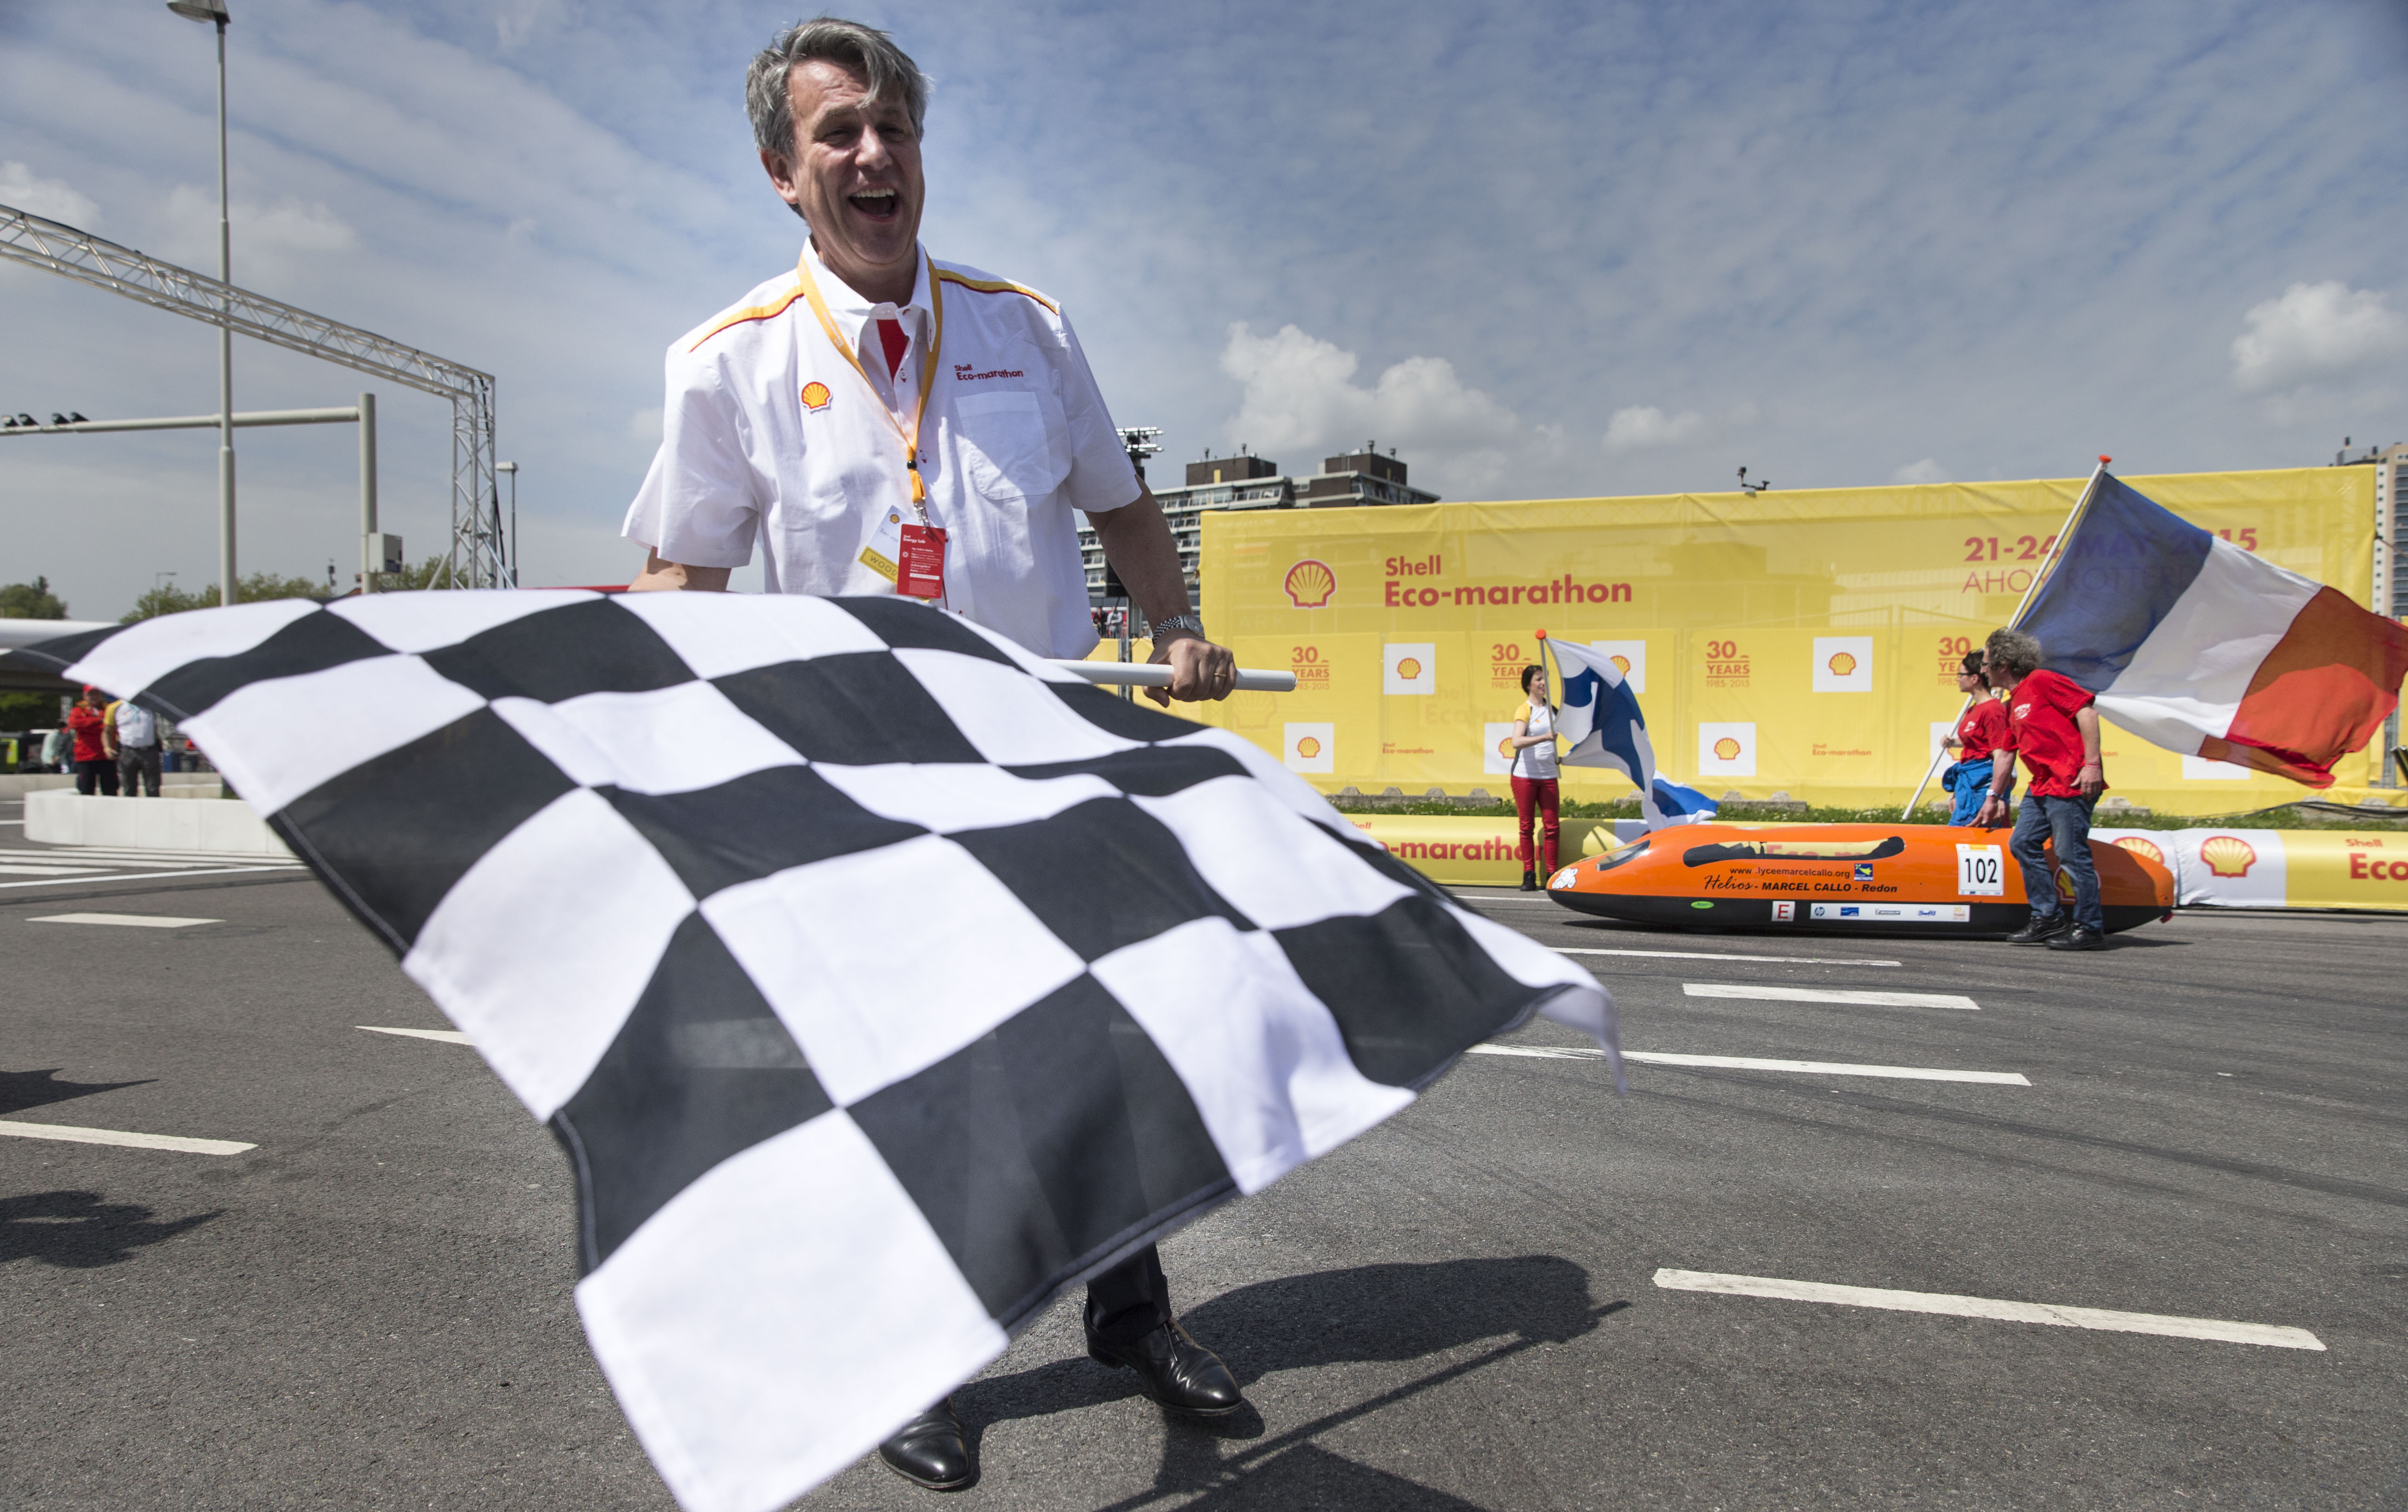 2015-05-22 15:37:06 ROTTERDAM - CEO van Shell, Ben van Beurden bij de opening van de Shell Eco-marathon 2015 in Rotterdam. ANP JERRY LAMPEN